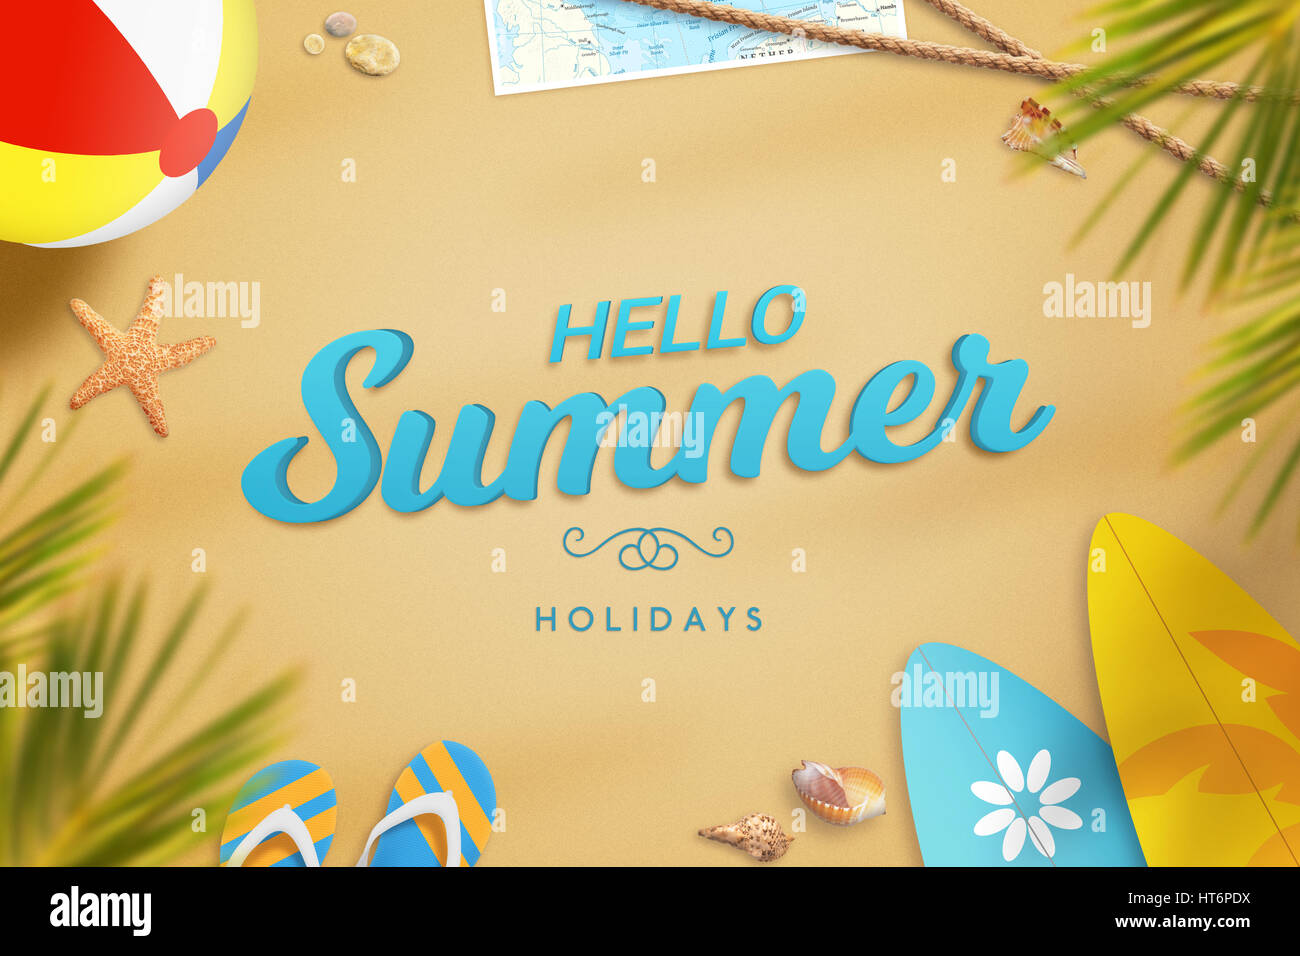 Vacanze Estate testo sulla spiaggia di sabbia circondata con pantofole, palm, palla, tavola da surf, occhiali da sole, mappa, stelle marine e conchiglie. Foto Stock